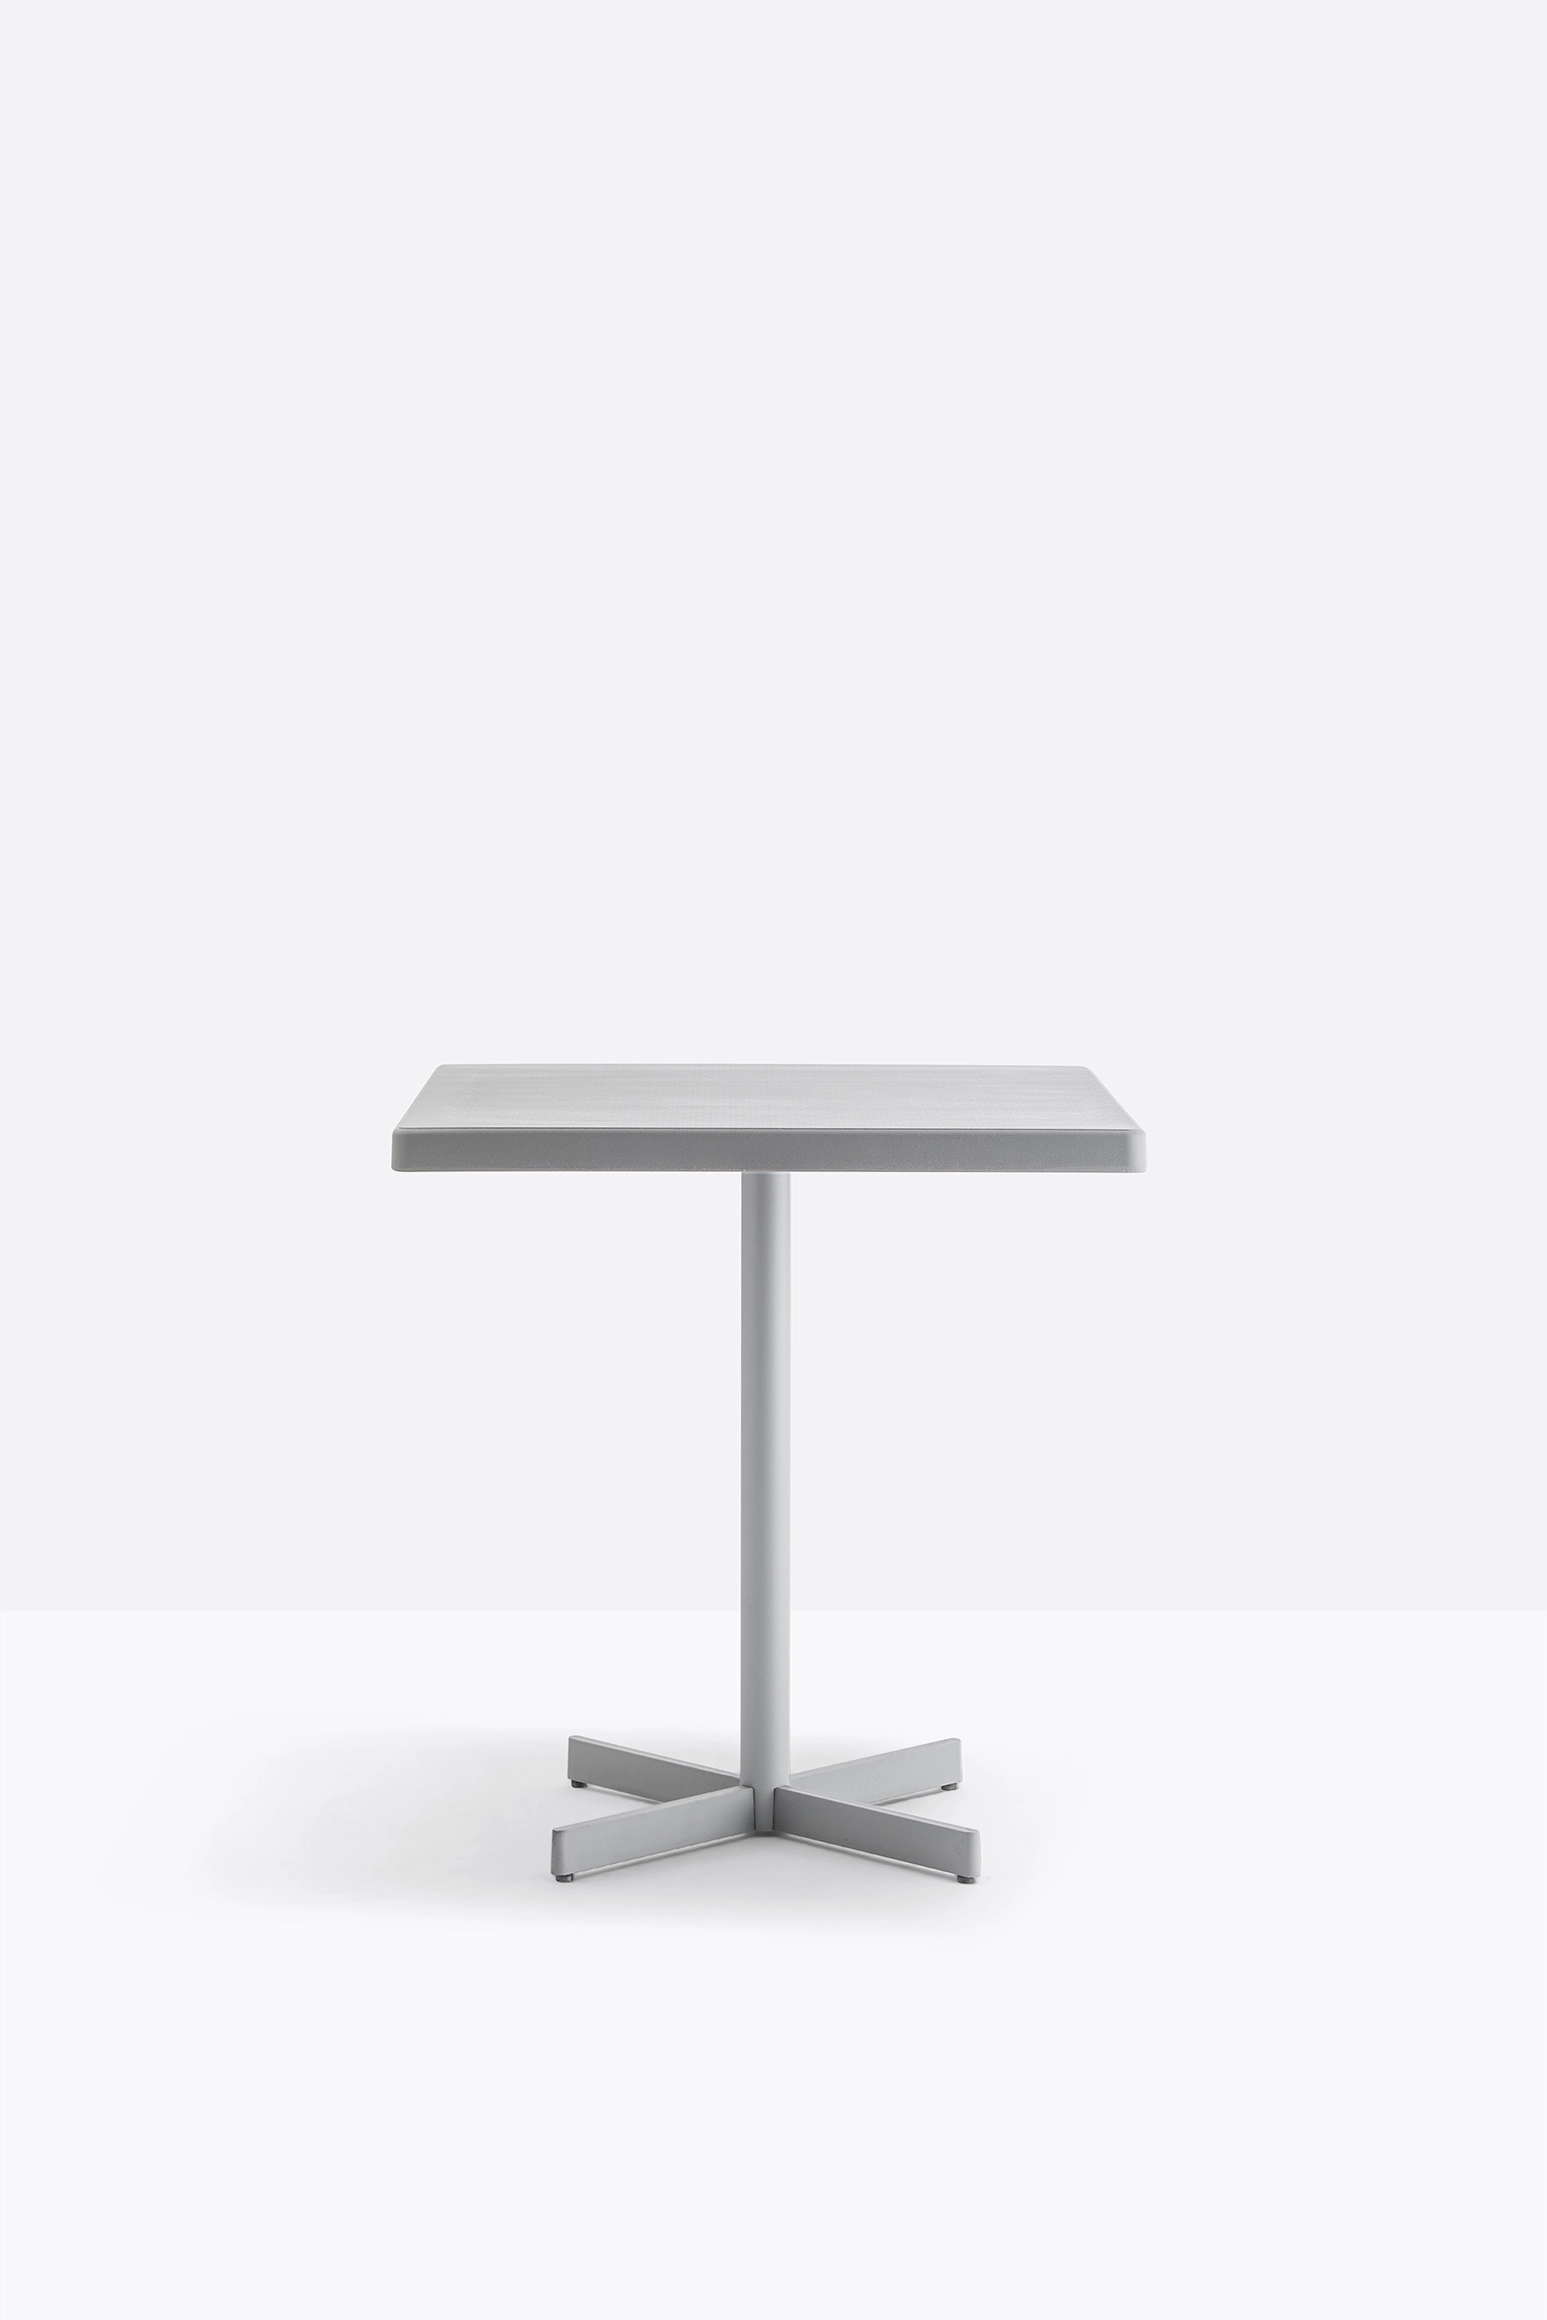 Tischgestell PLASTIC-X 4740 von Pedrali